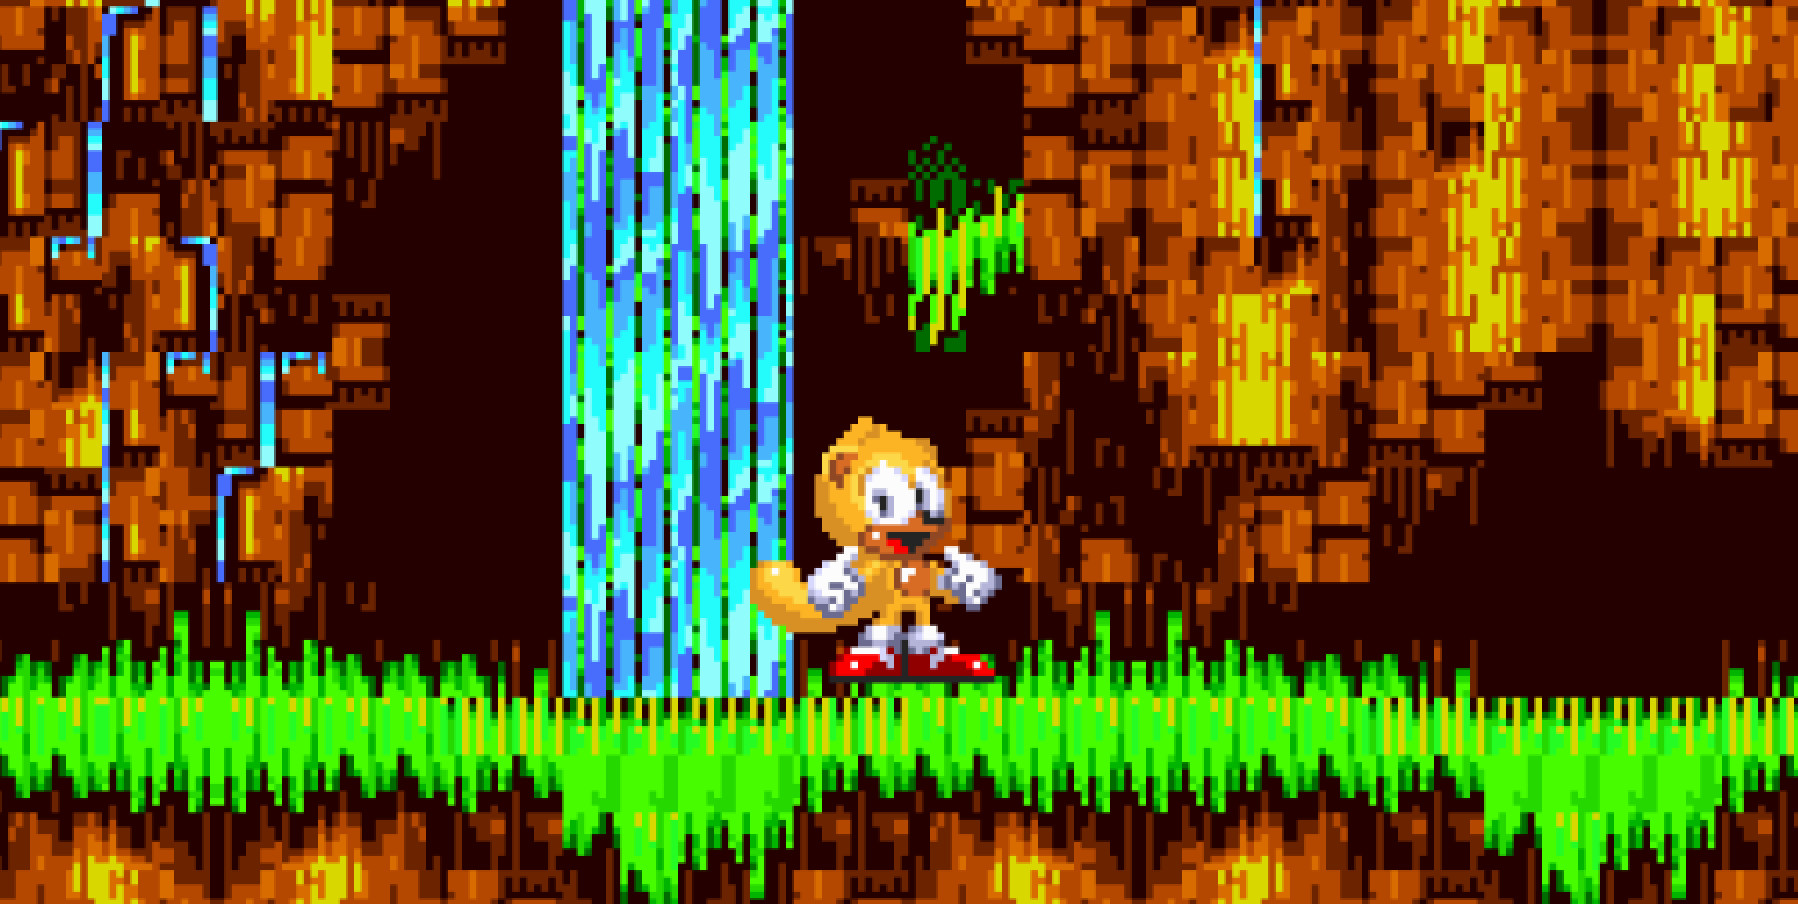 Sonic 3 AIR: Boost Ability 